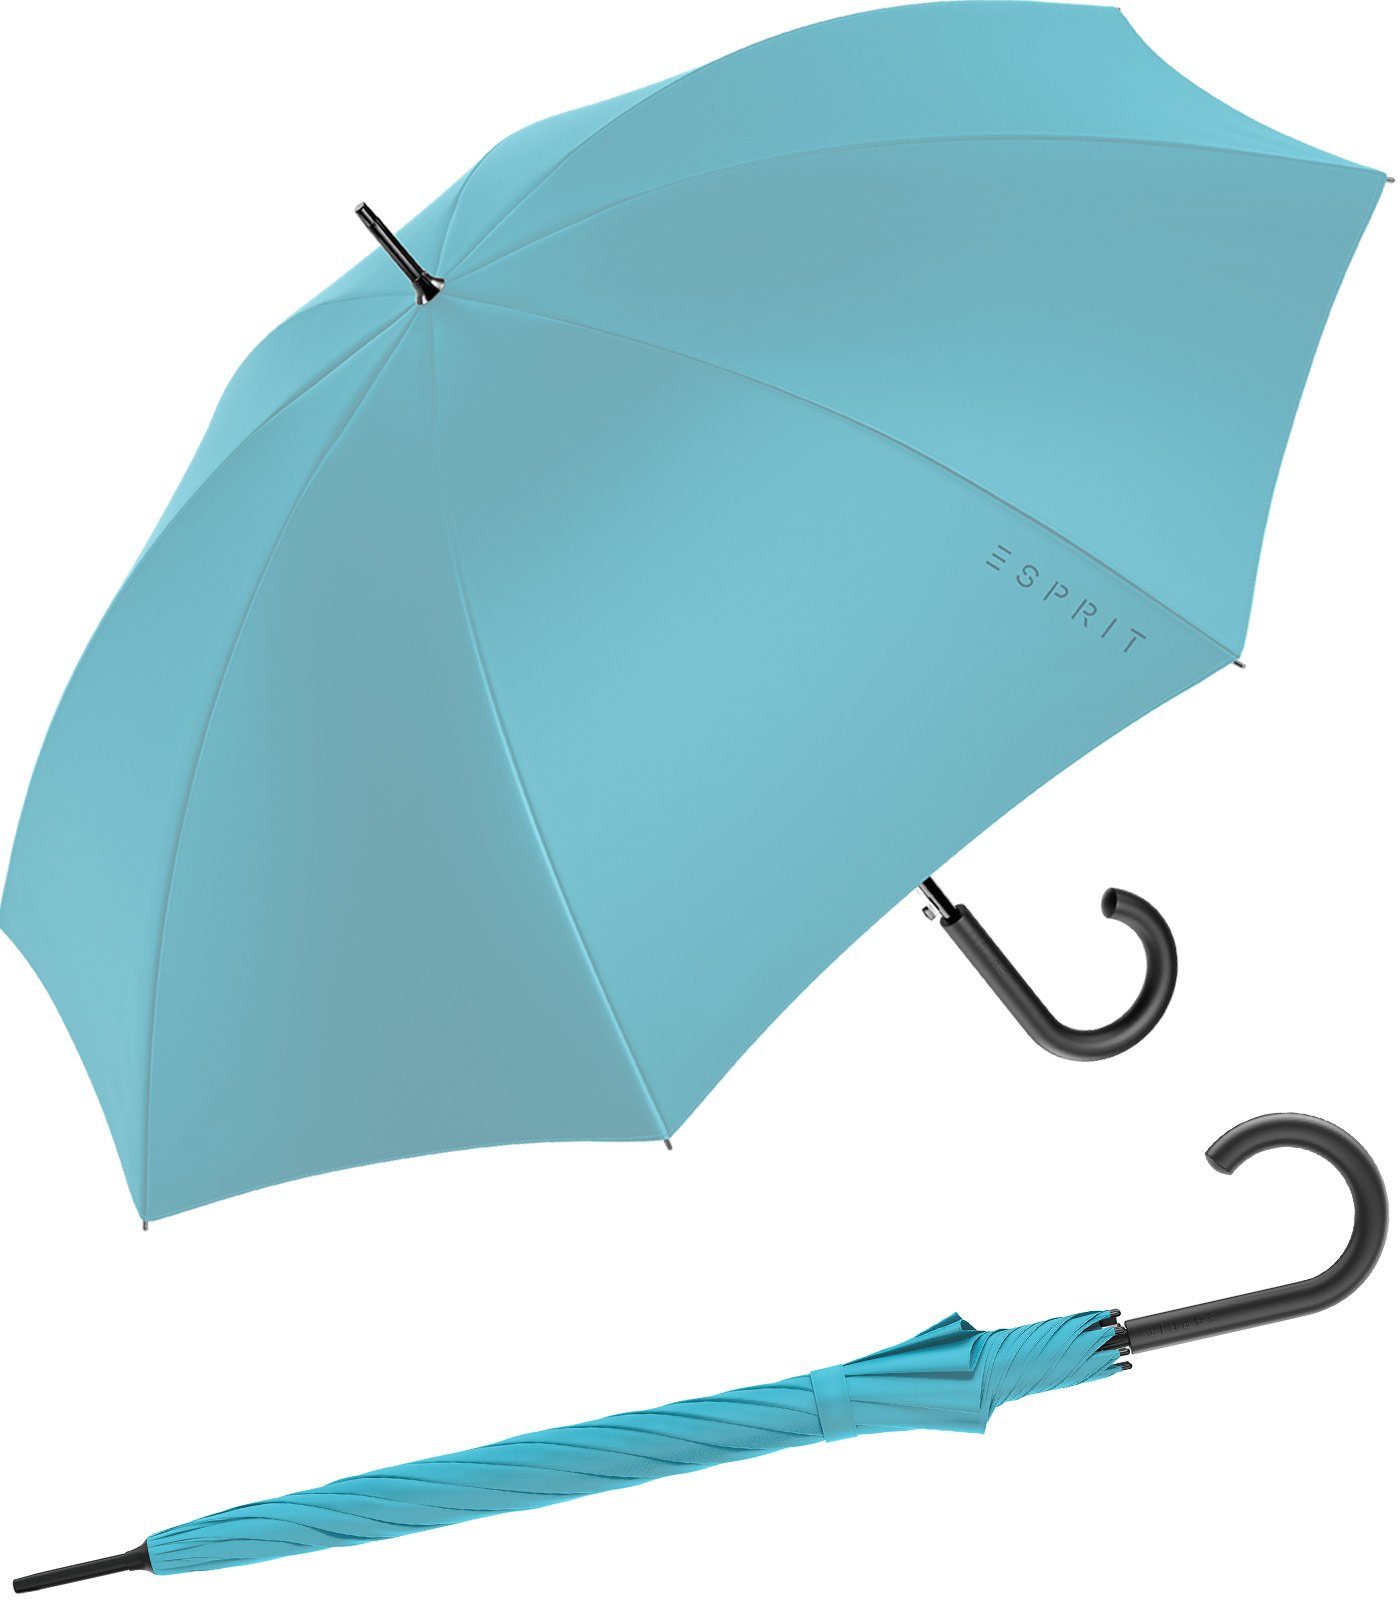 Esprit Langregenschirm Damen-Regenschirm mit Automatik FJ 2023, groß und stabil, in den Trendfarben blau